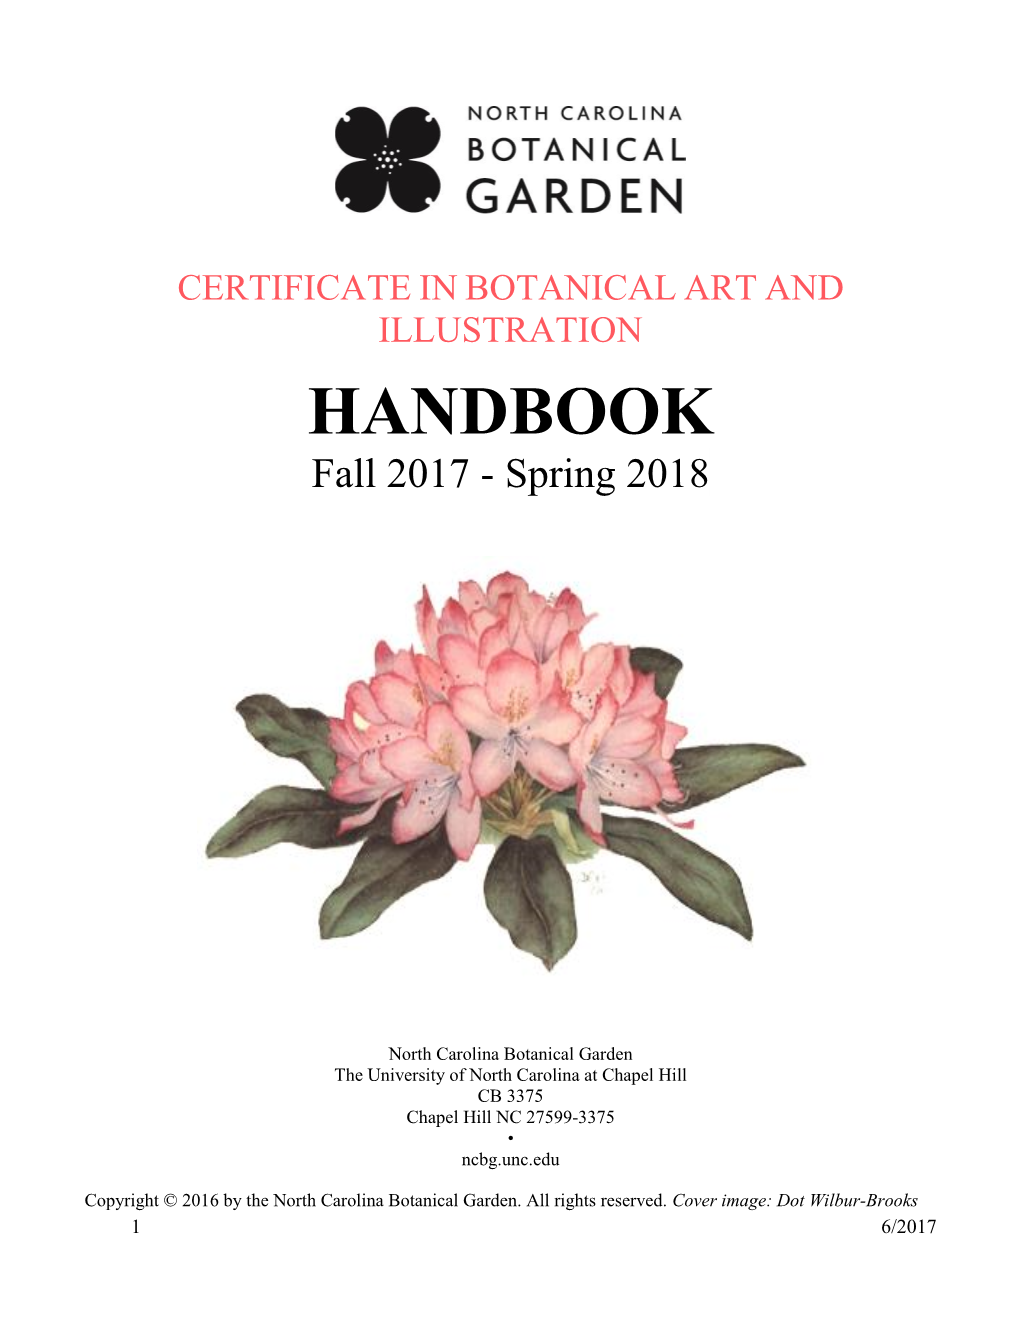 HANDBOOK Fall 2017 - Spring 2018